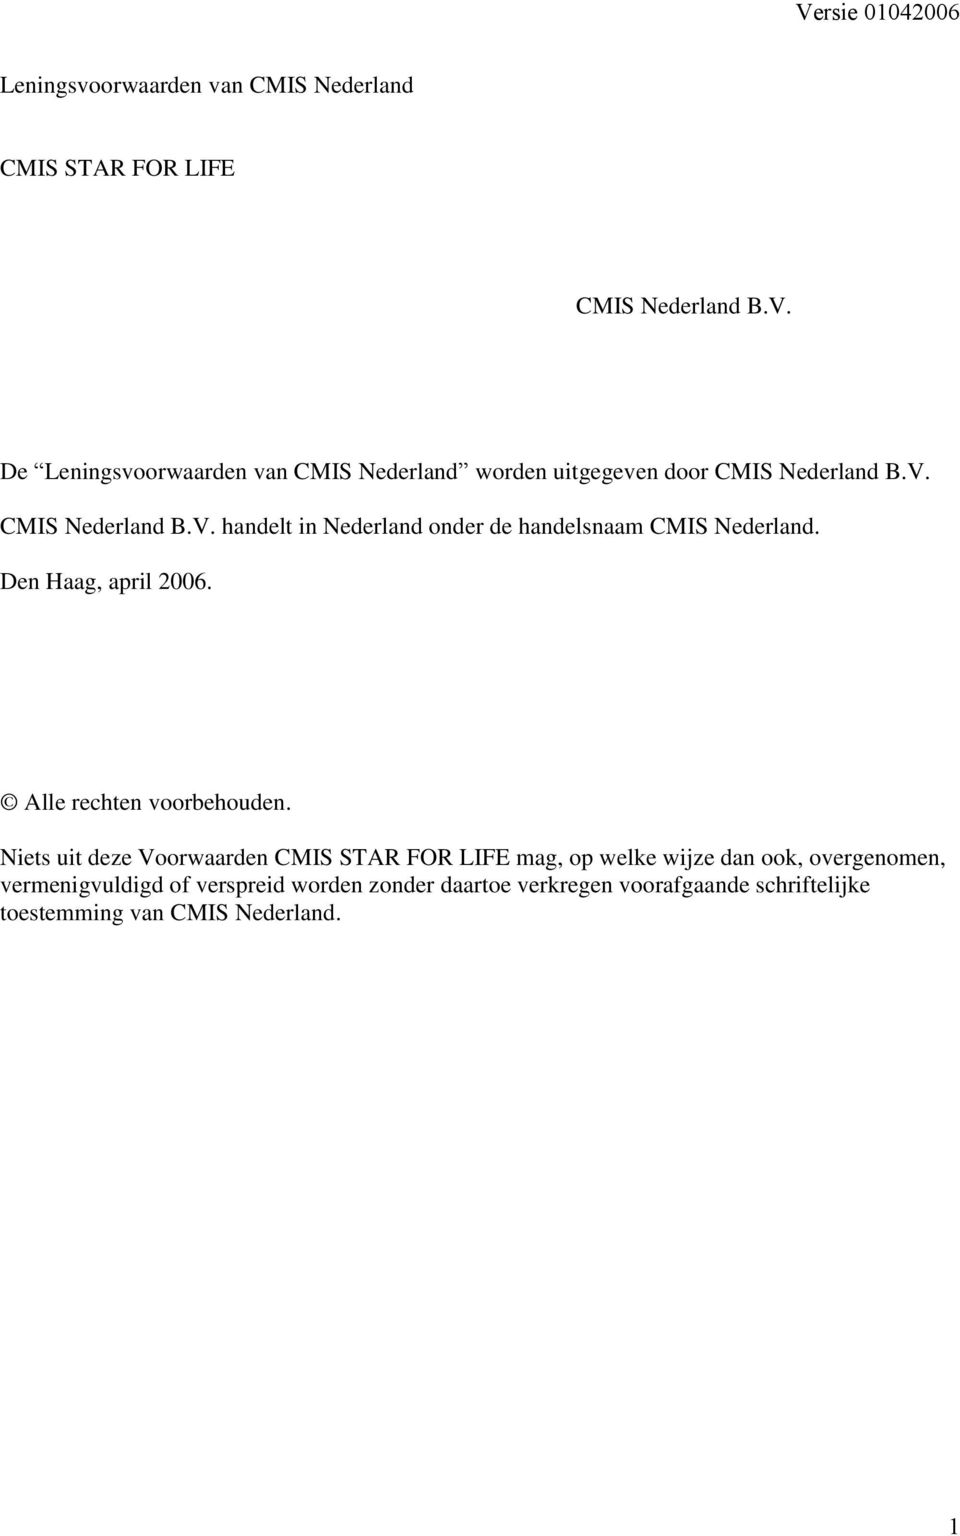 CMIS Nederland B.V. handelt in Nederland onder de handelsnaam CMIS Nederland. Den Haag, april 2006.